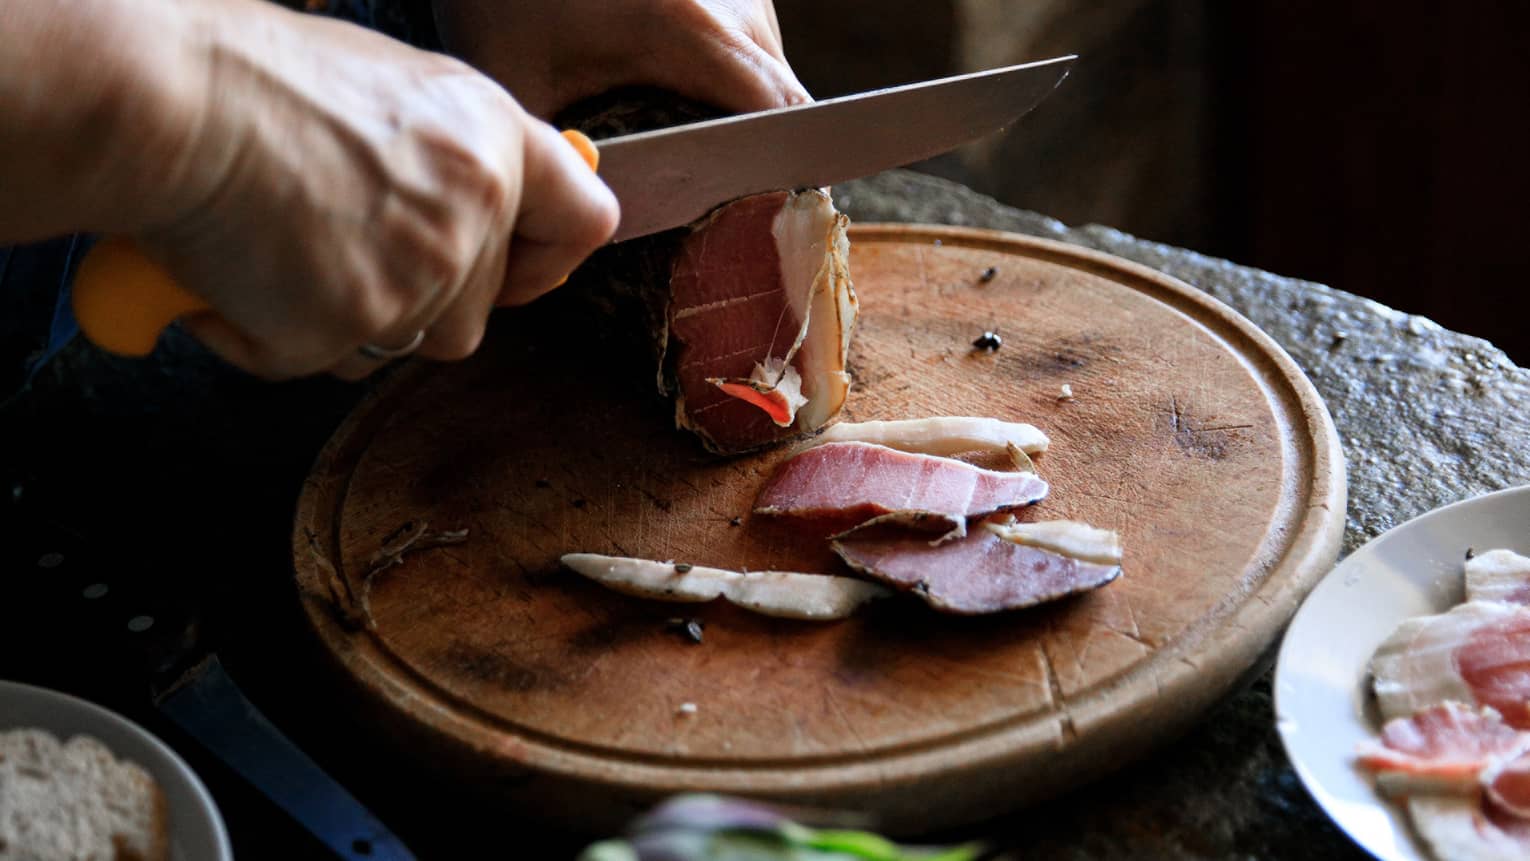 Person cutting Louza (Aegean prosciutto) on round cutting board